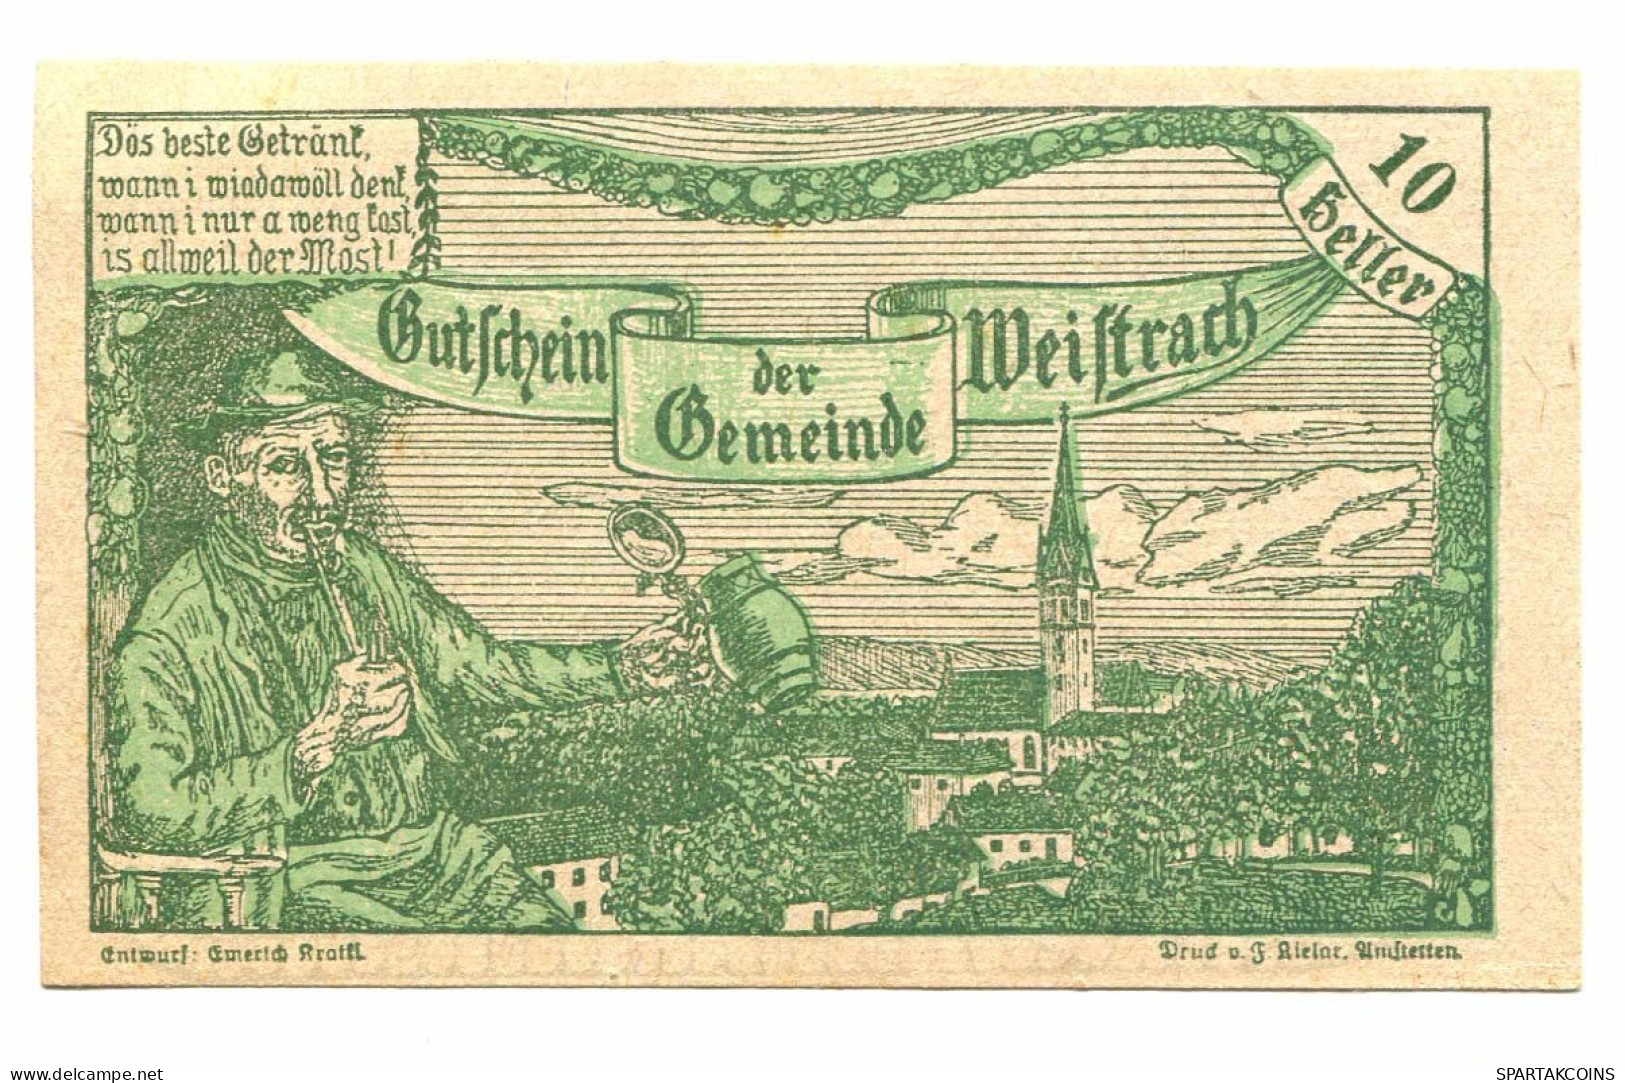 10 Heller 1920 WEISTBACH Österreich UNC Notgeld Papiergeld Banknote #P10467 - Lokale Ausgaben